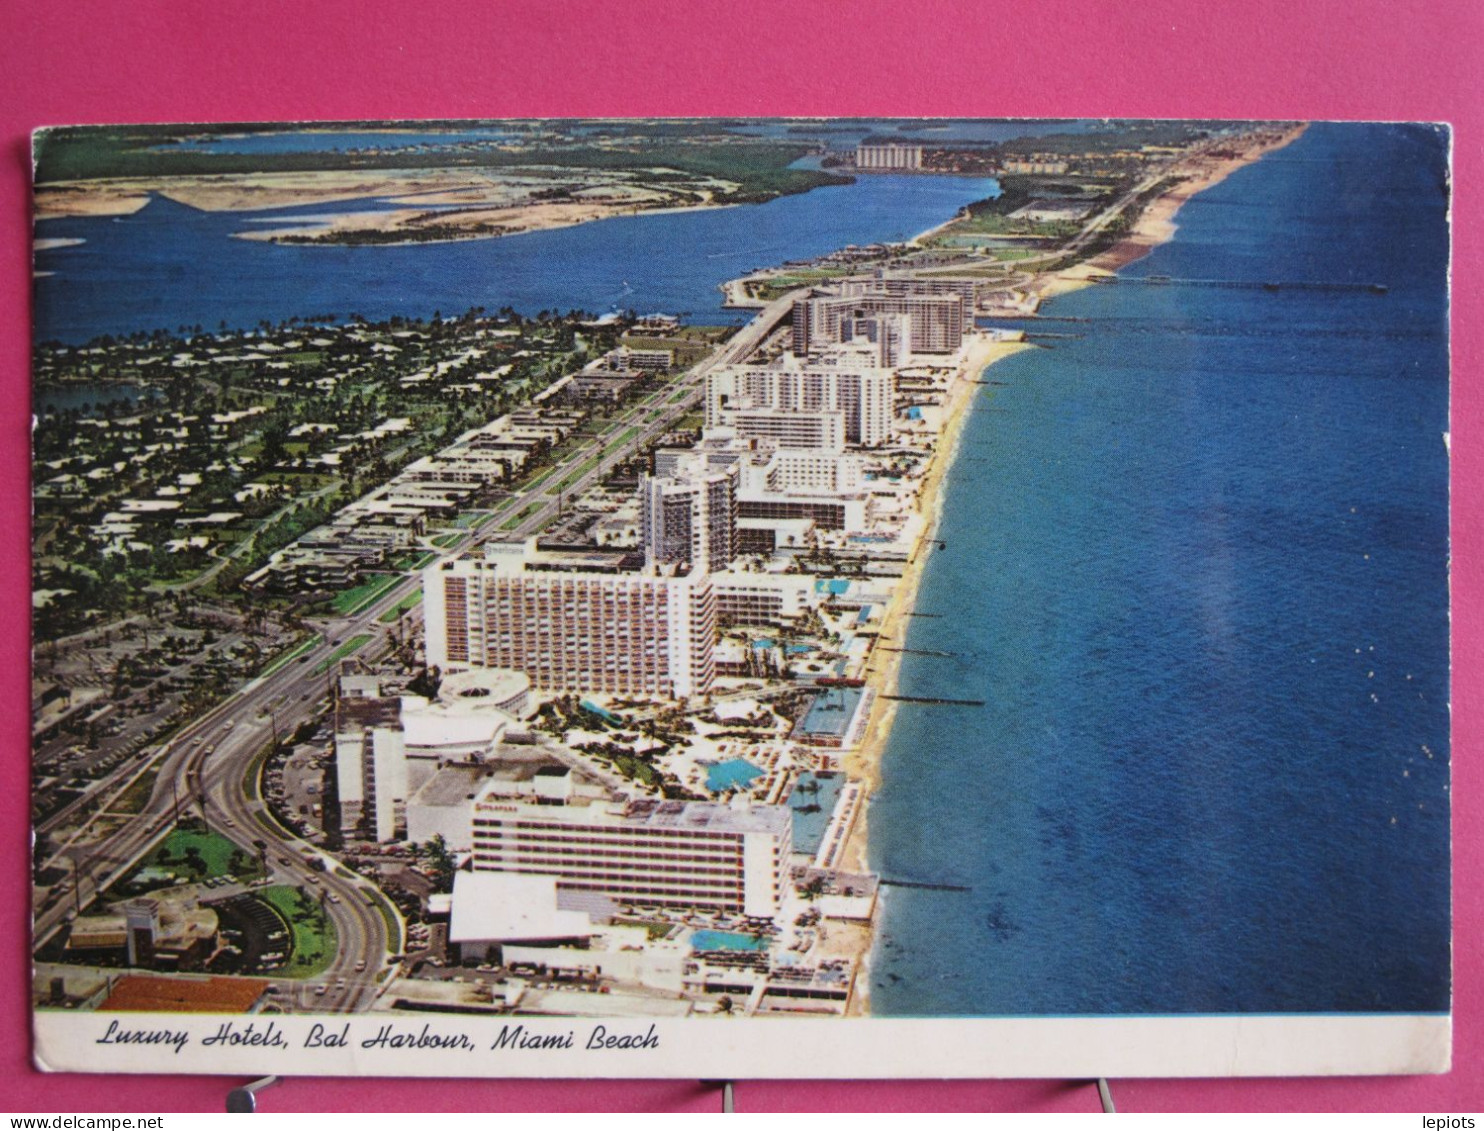 USA - Florida - Miami Beach - Luxury Hotels - Bal Harbour - Miami Beach